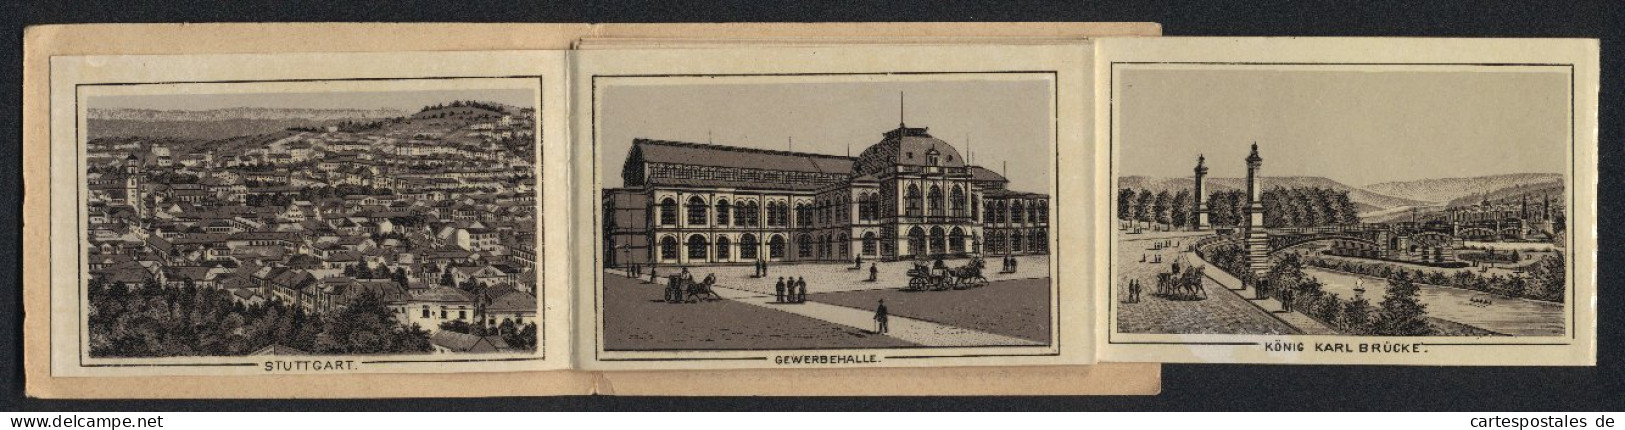 Leporello-Album Stuttgart Mit 12 Lithographie-Ansichten, Gewerbehalle, Politechnikum, Wilhelma, Marktplatz, Postgebäu  - Lithographien